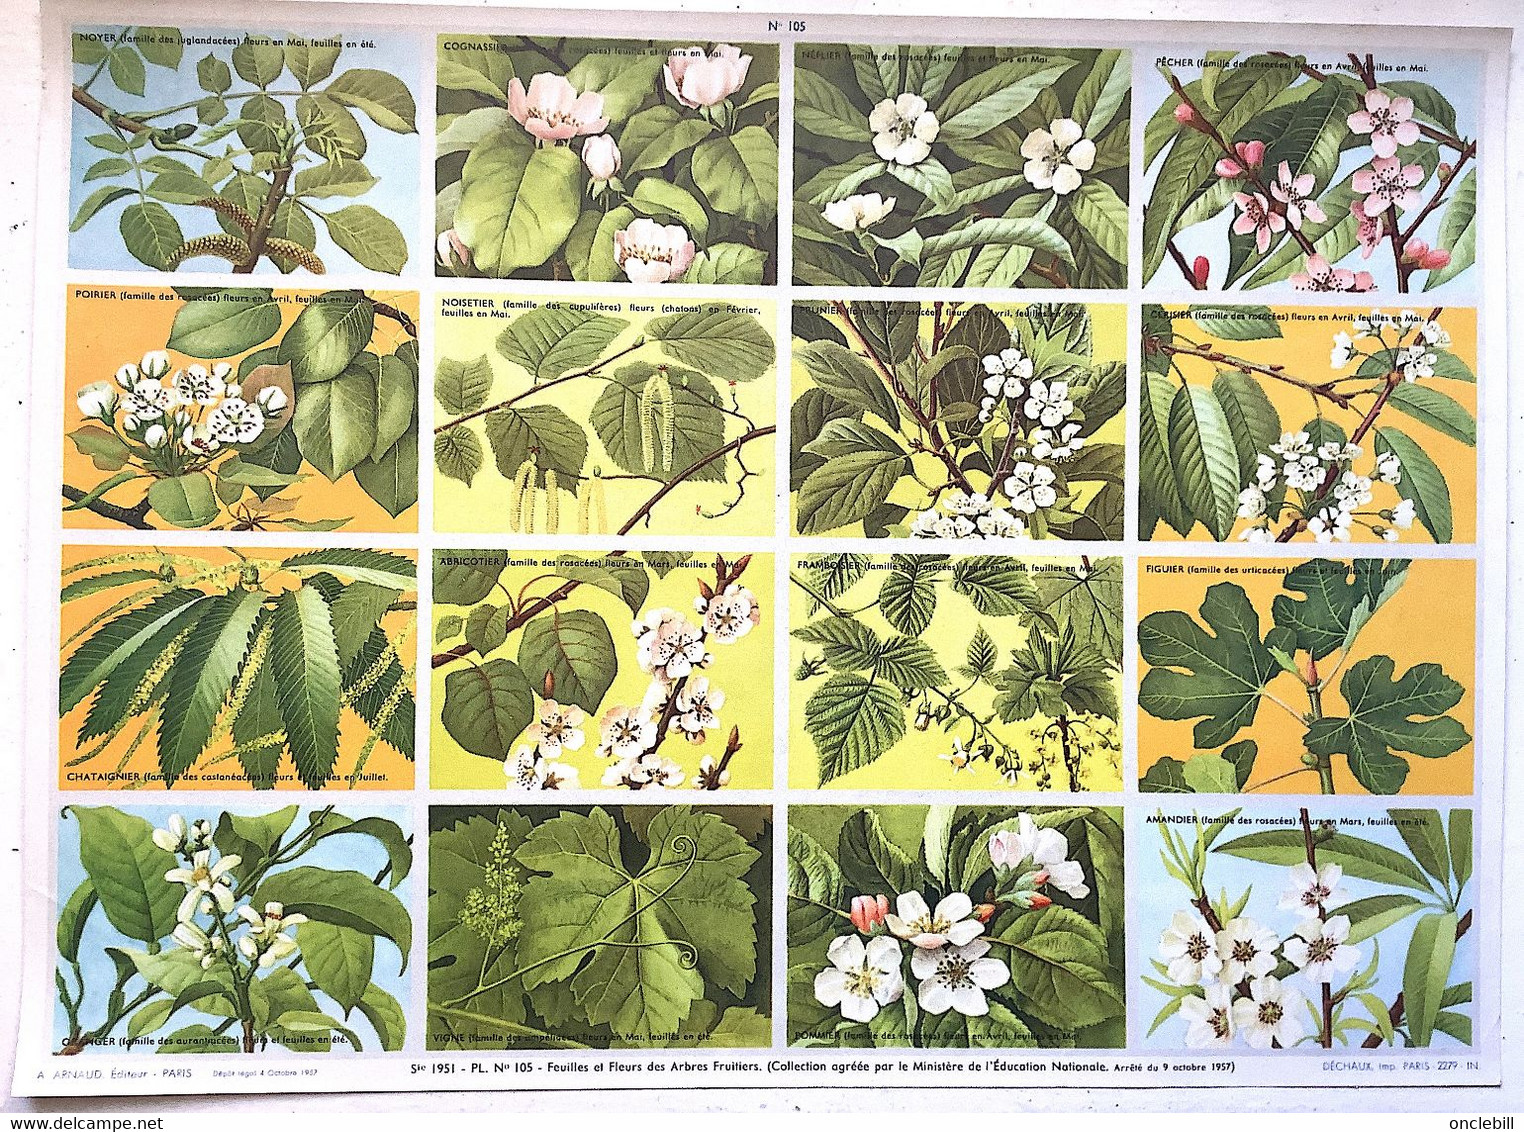 pédagogie ecole images botannique végétaux 9 planches scolaires arnaud dechaux éditeur 1950 état superbe